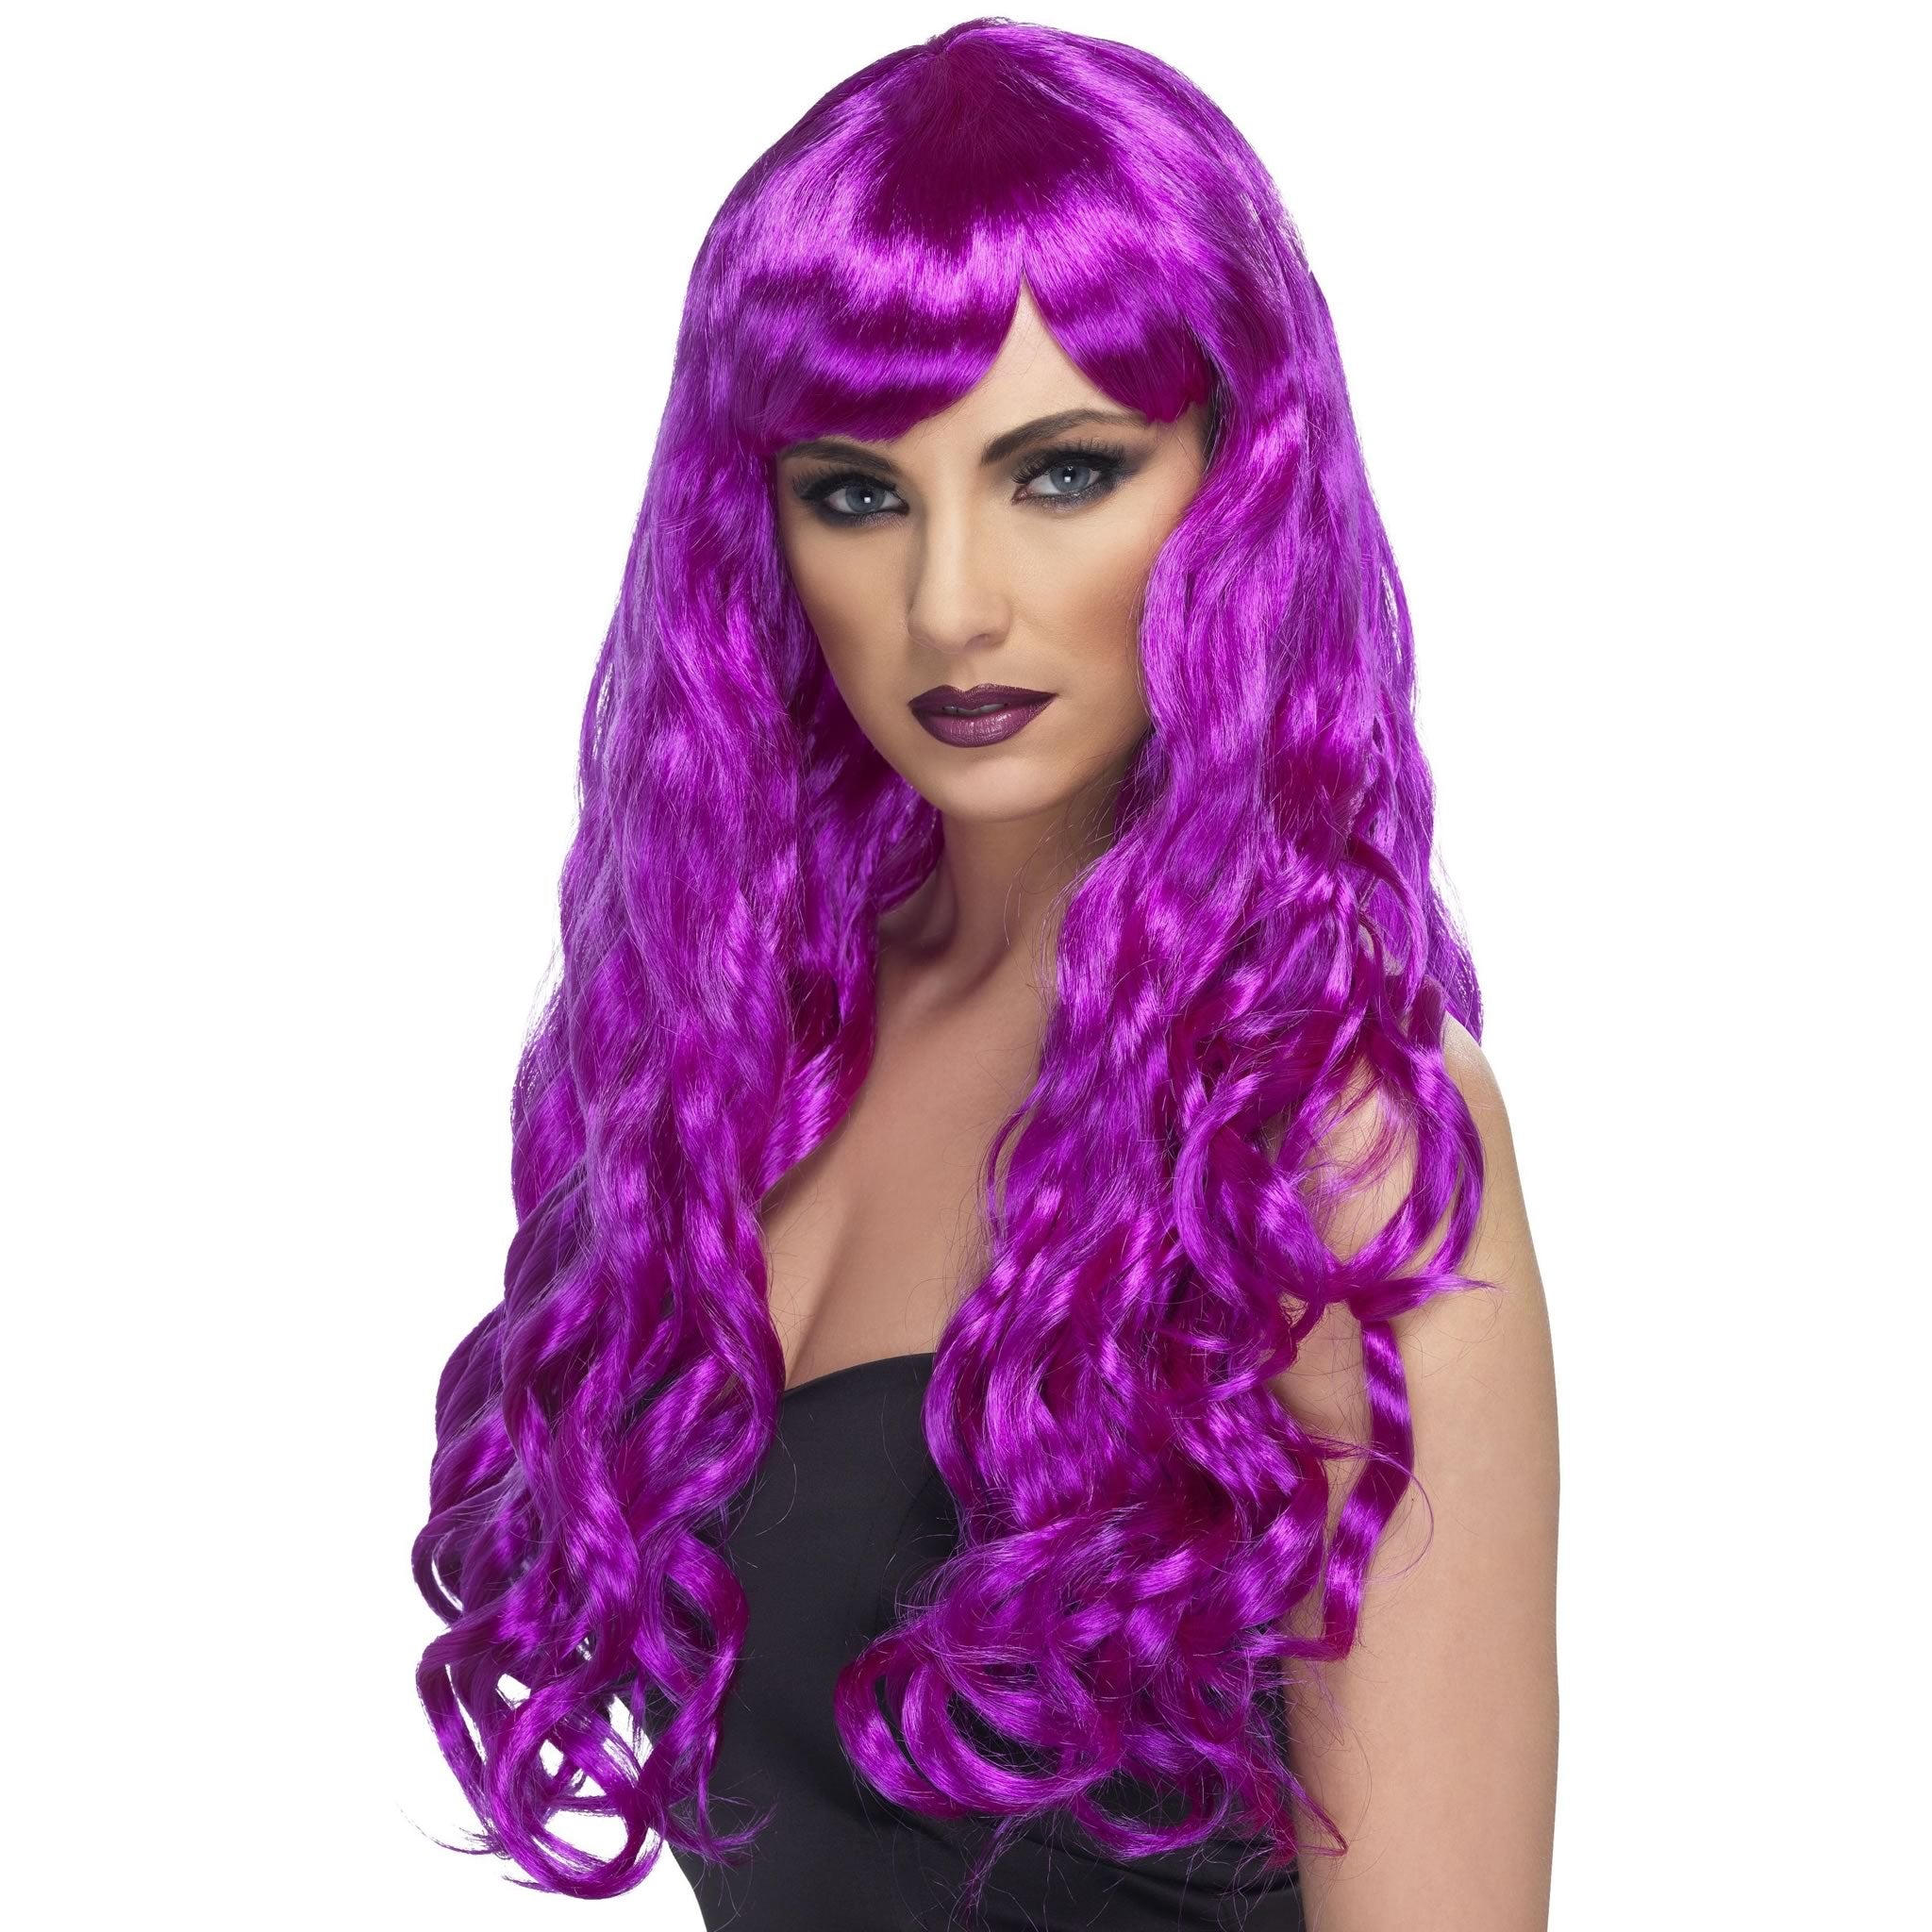 Long wavy purple woman's wig